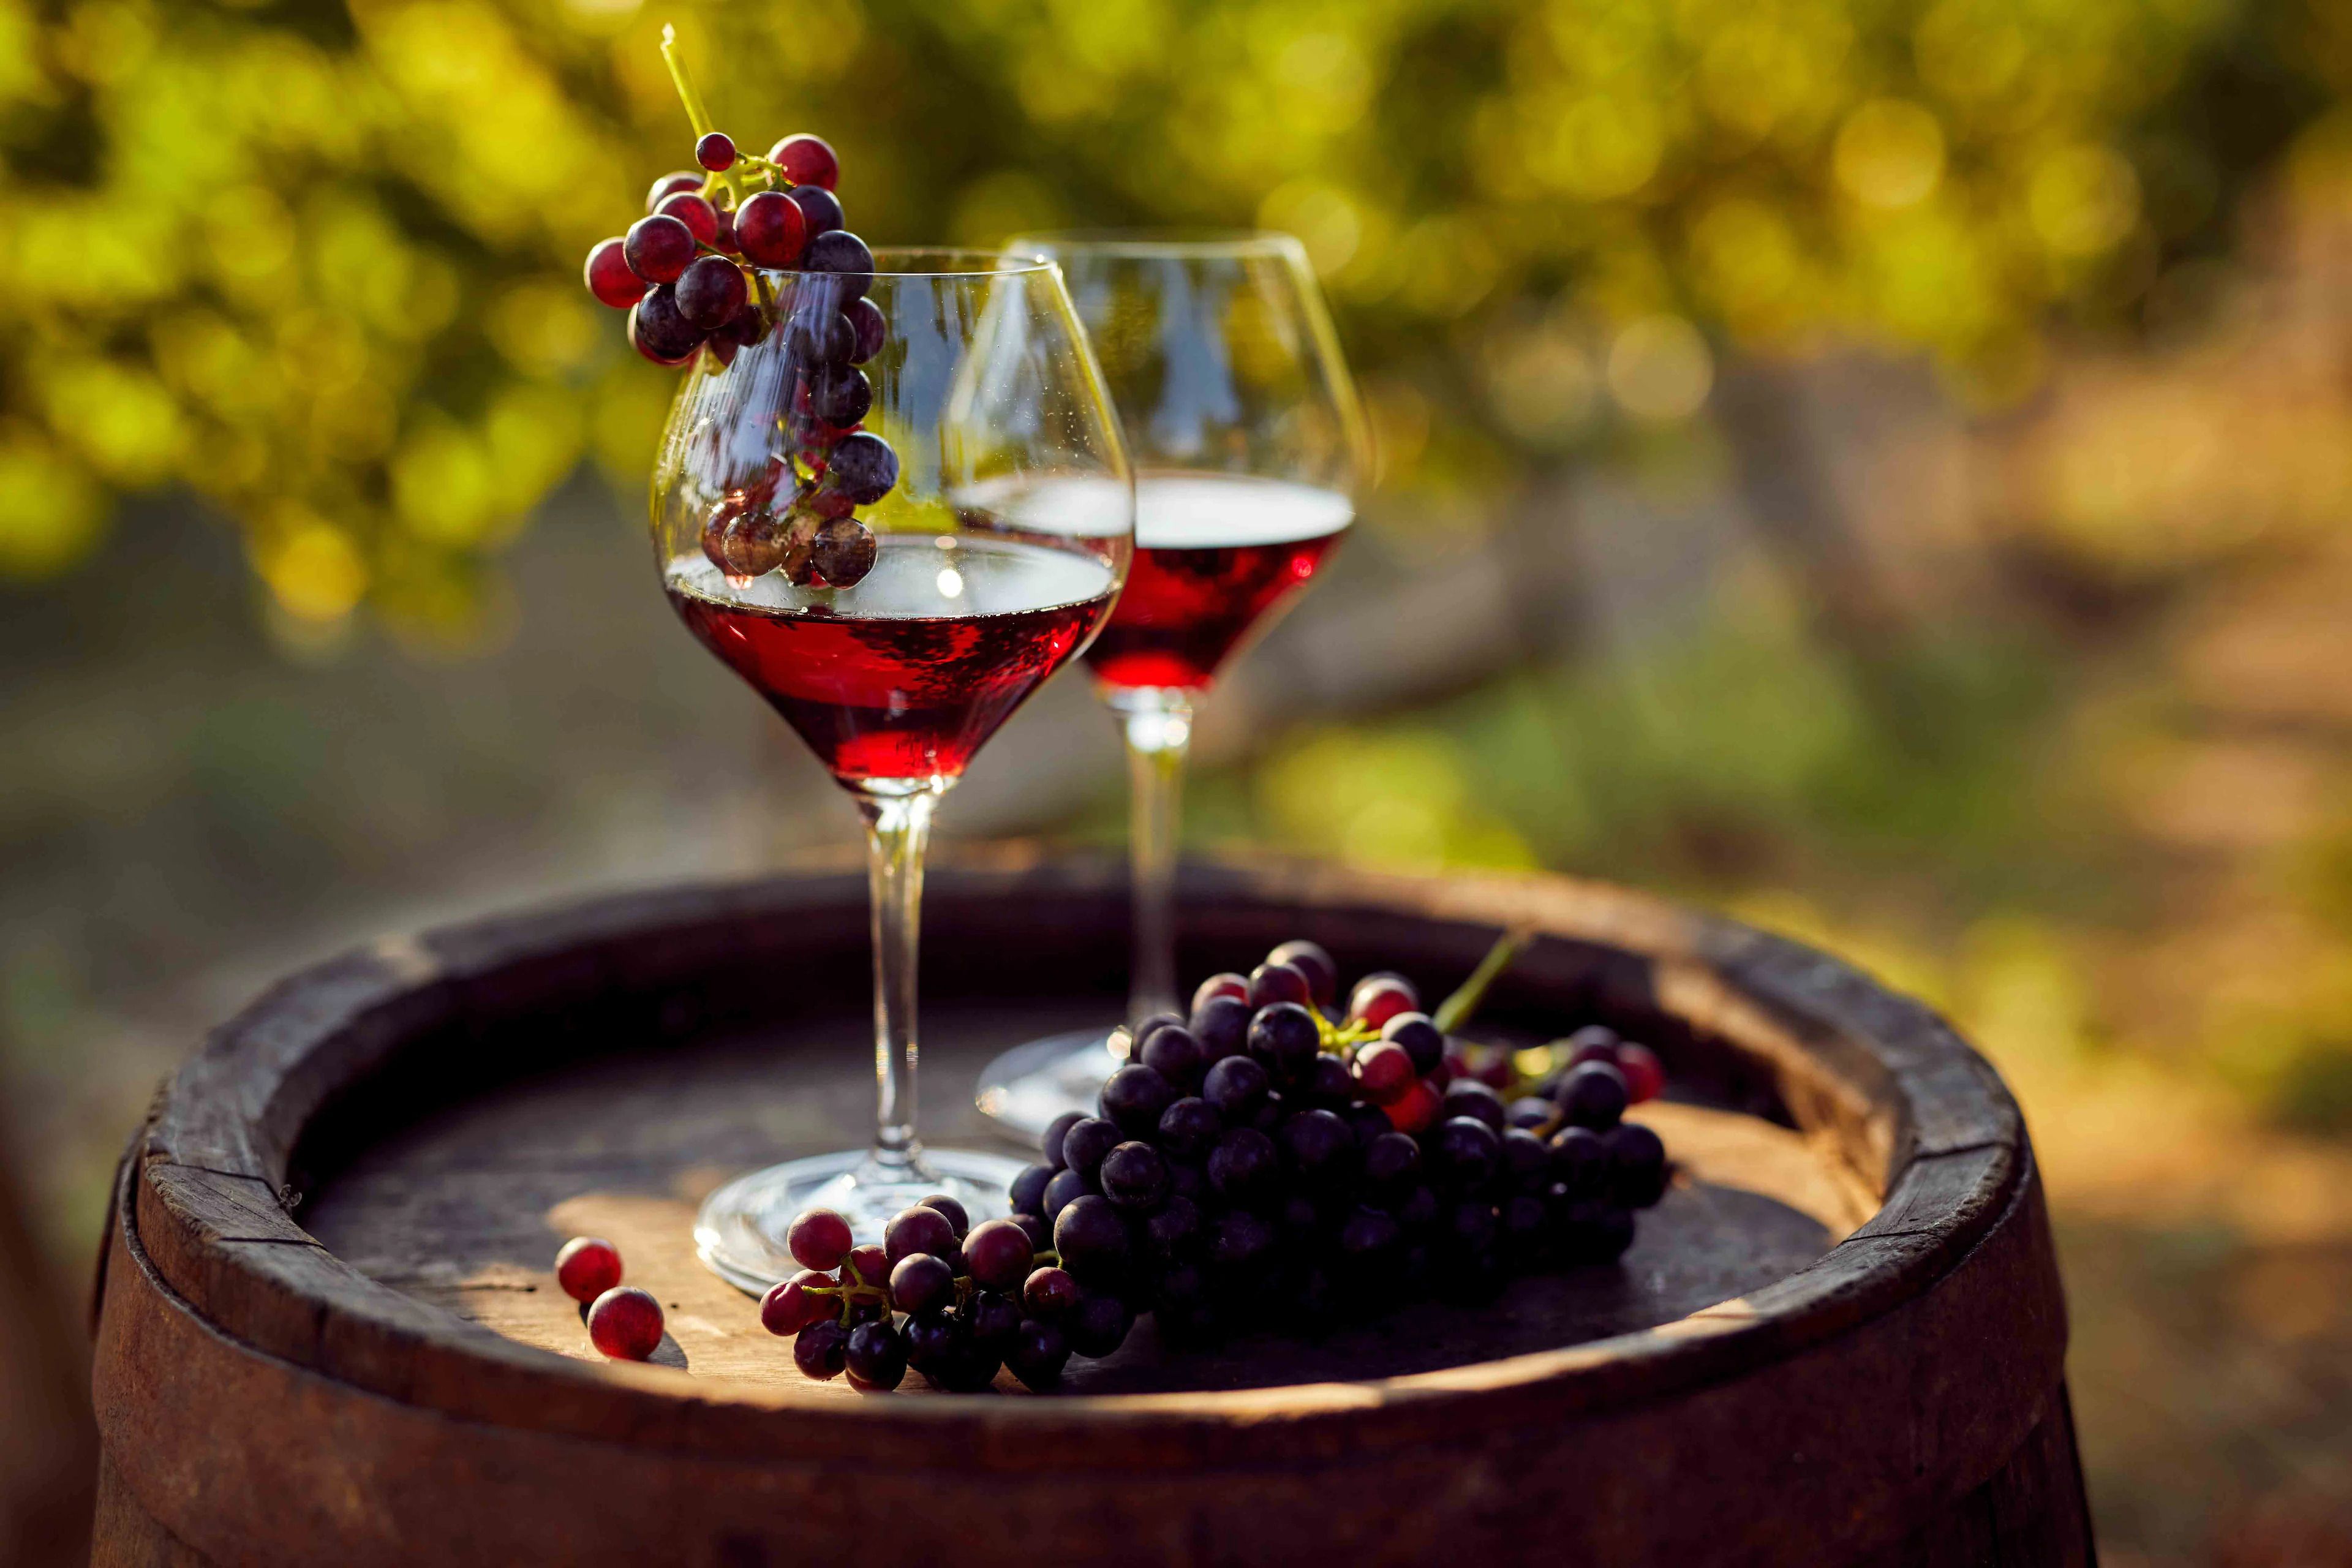 szív egészségére vörösbor előnyei)